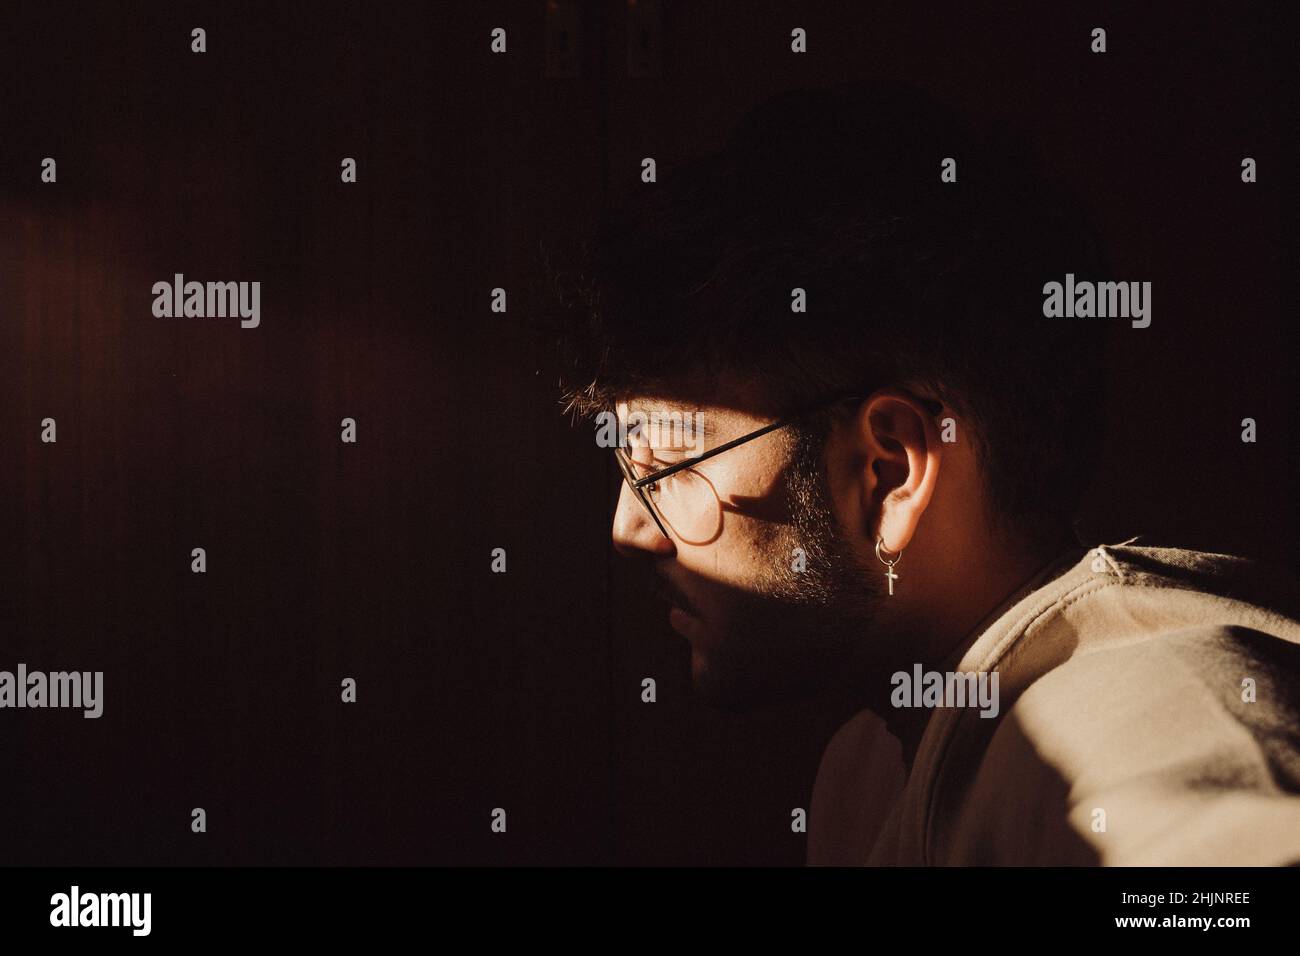 Un portrait d'un homme en lunettes avec une lumière qui réfléchit sur son visage Banque D'Images